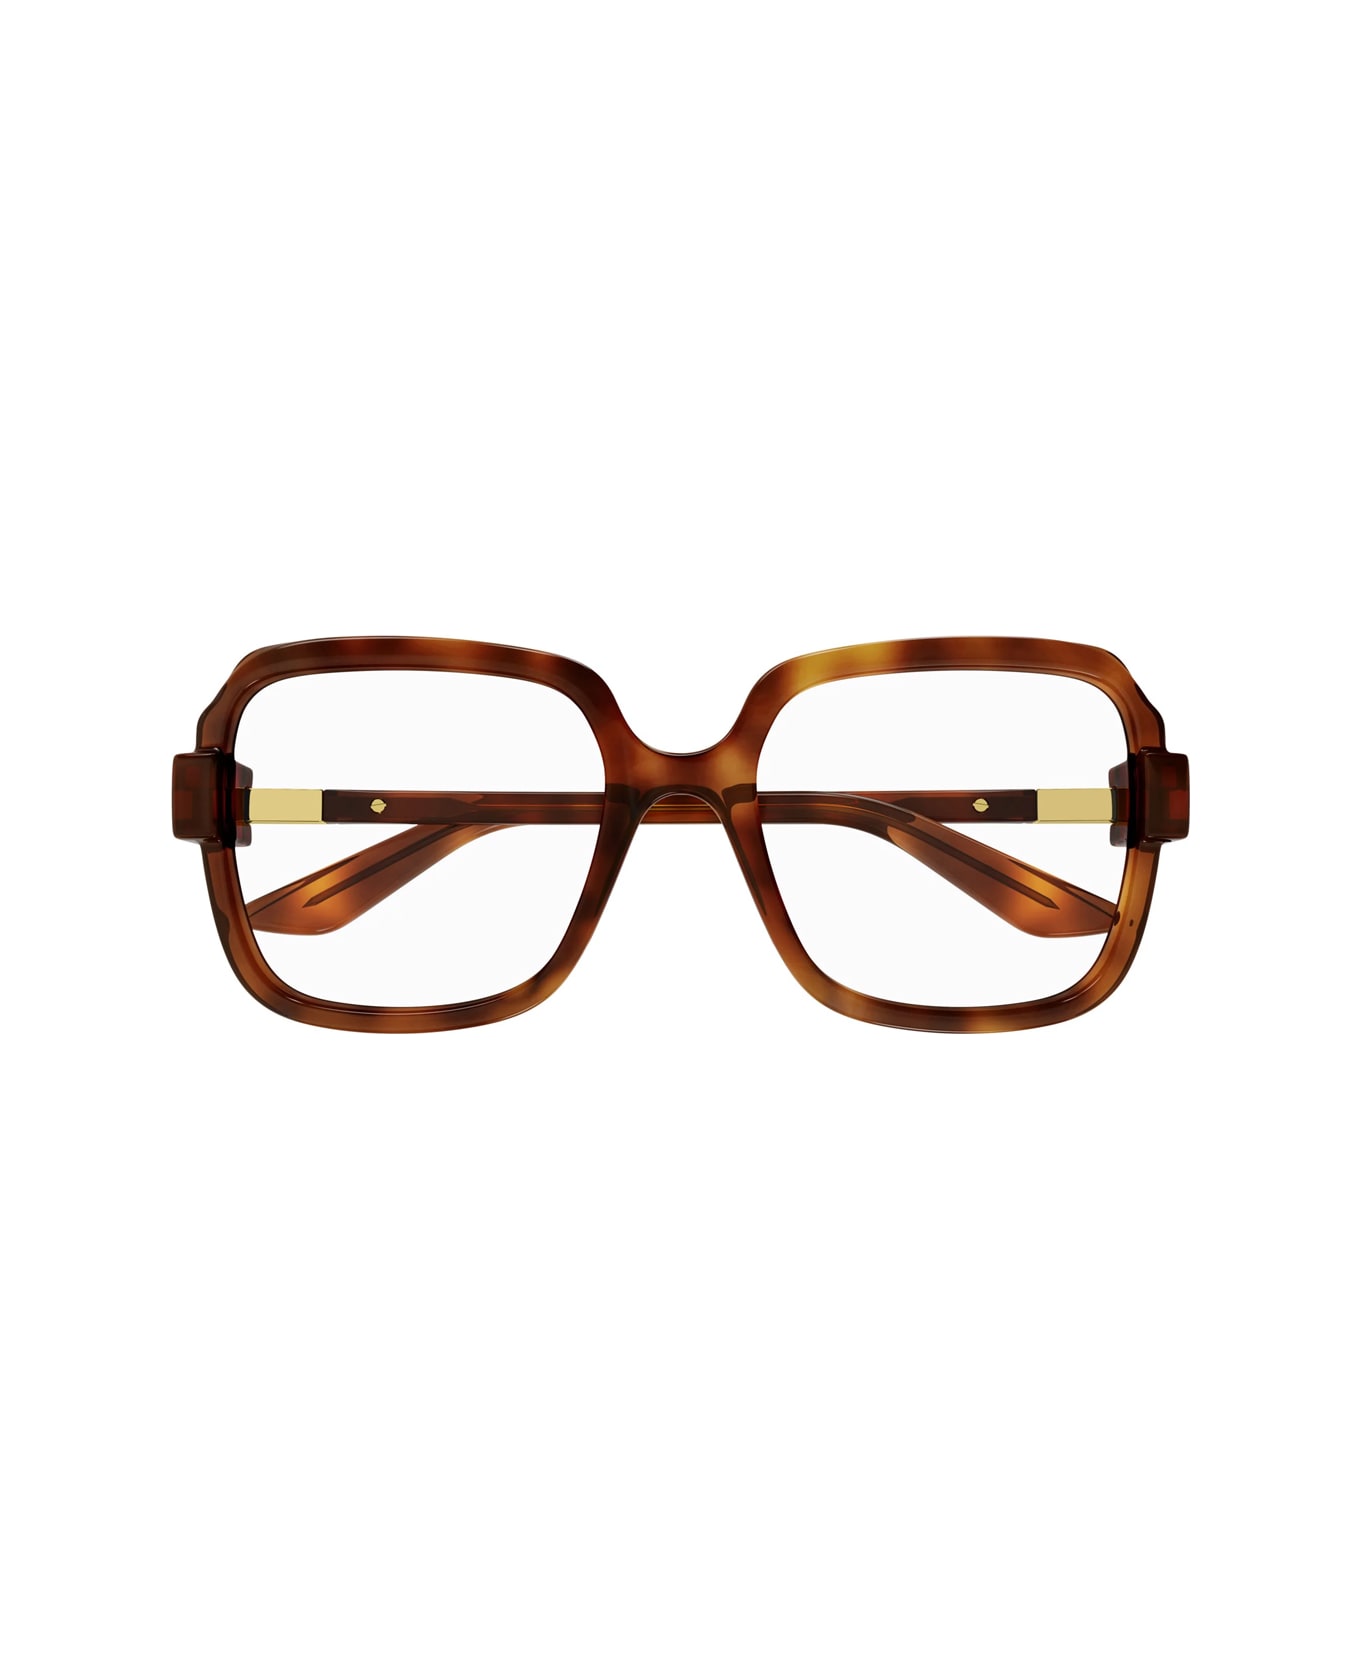 Gucci Eyewear Gg1433o 002 Glasses - Arancione アイウェア